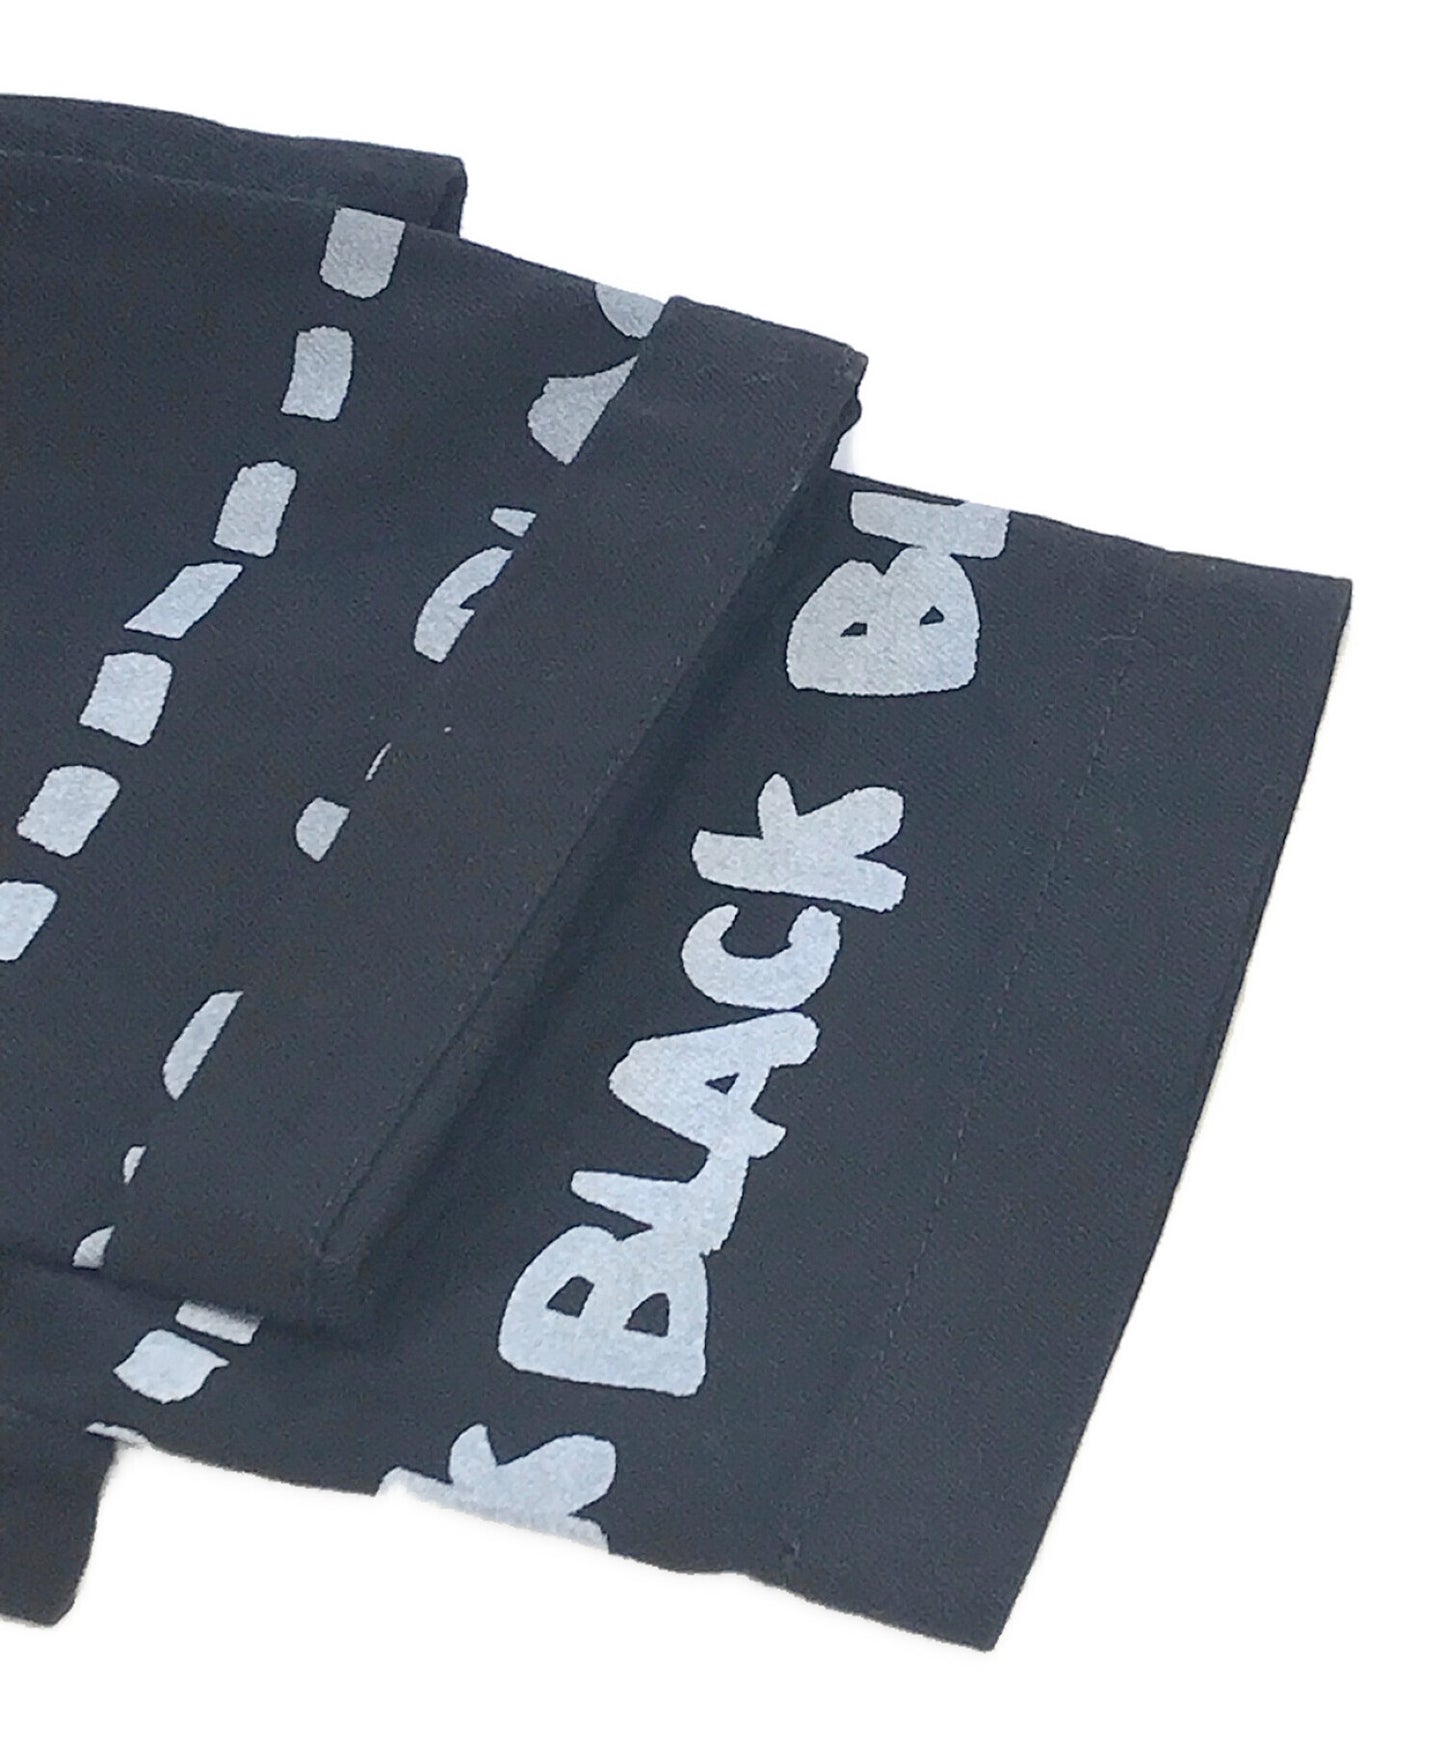 [Pre-owned] BLACK COMME des GARCONS sarouel pants 1E-P221